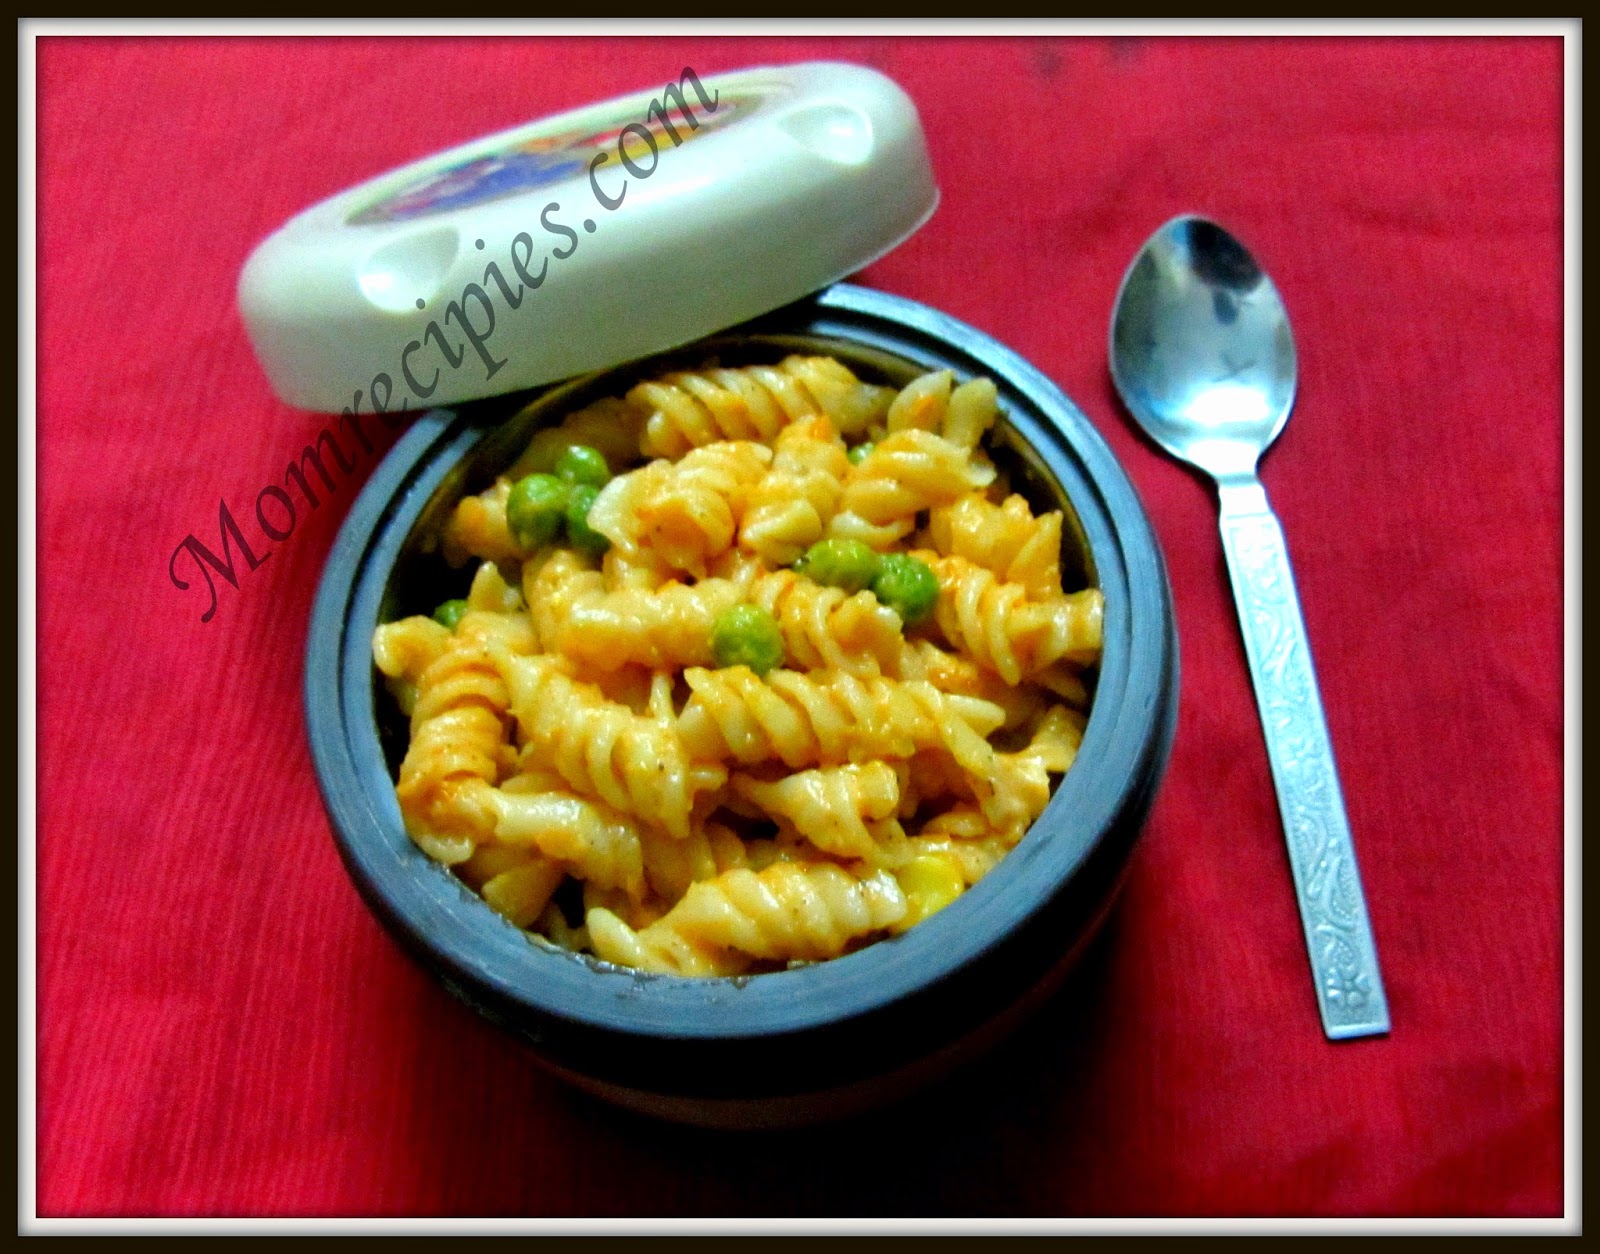 Mom's Recipies: Tomato cheese pasta ~Kids Lunch Box Recipe